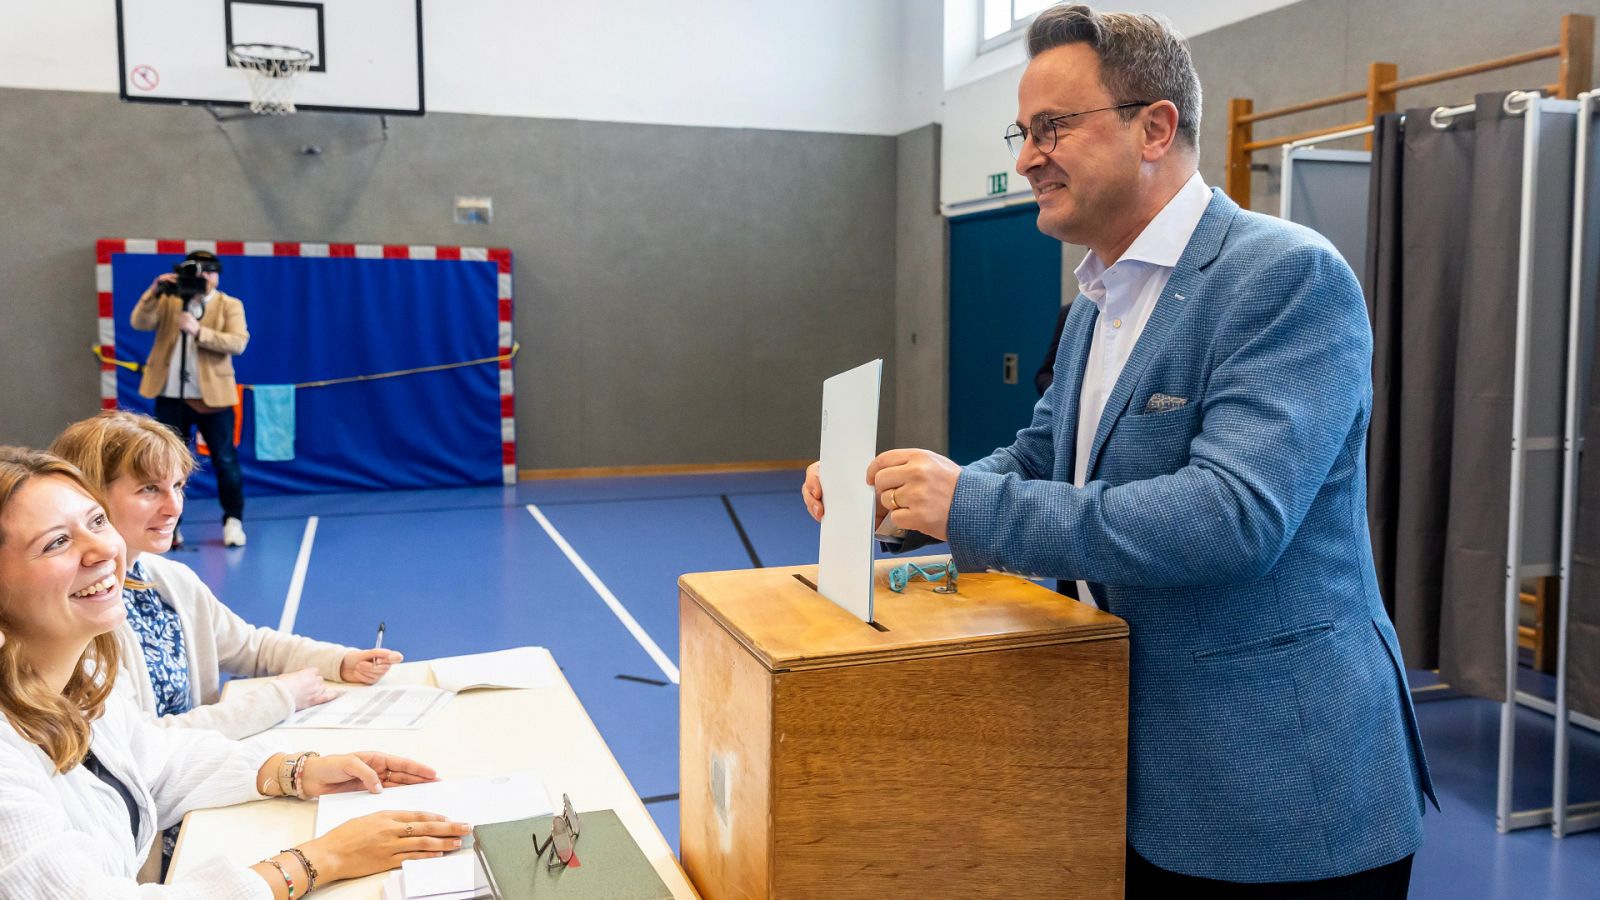 El primer ministro de Luxemburgo, Xavier Bettel, deposita su voto en la urna de un colegio electoral de la capital del país